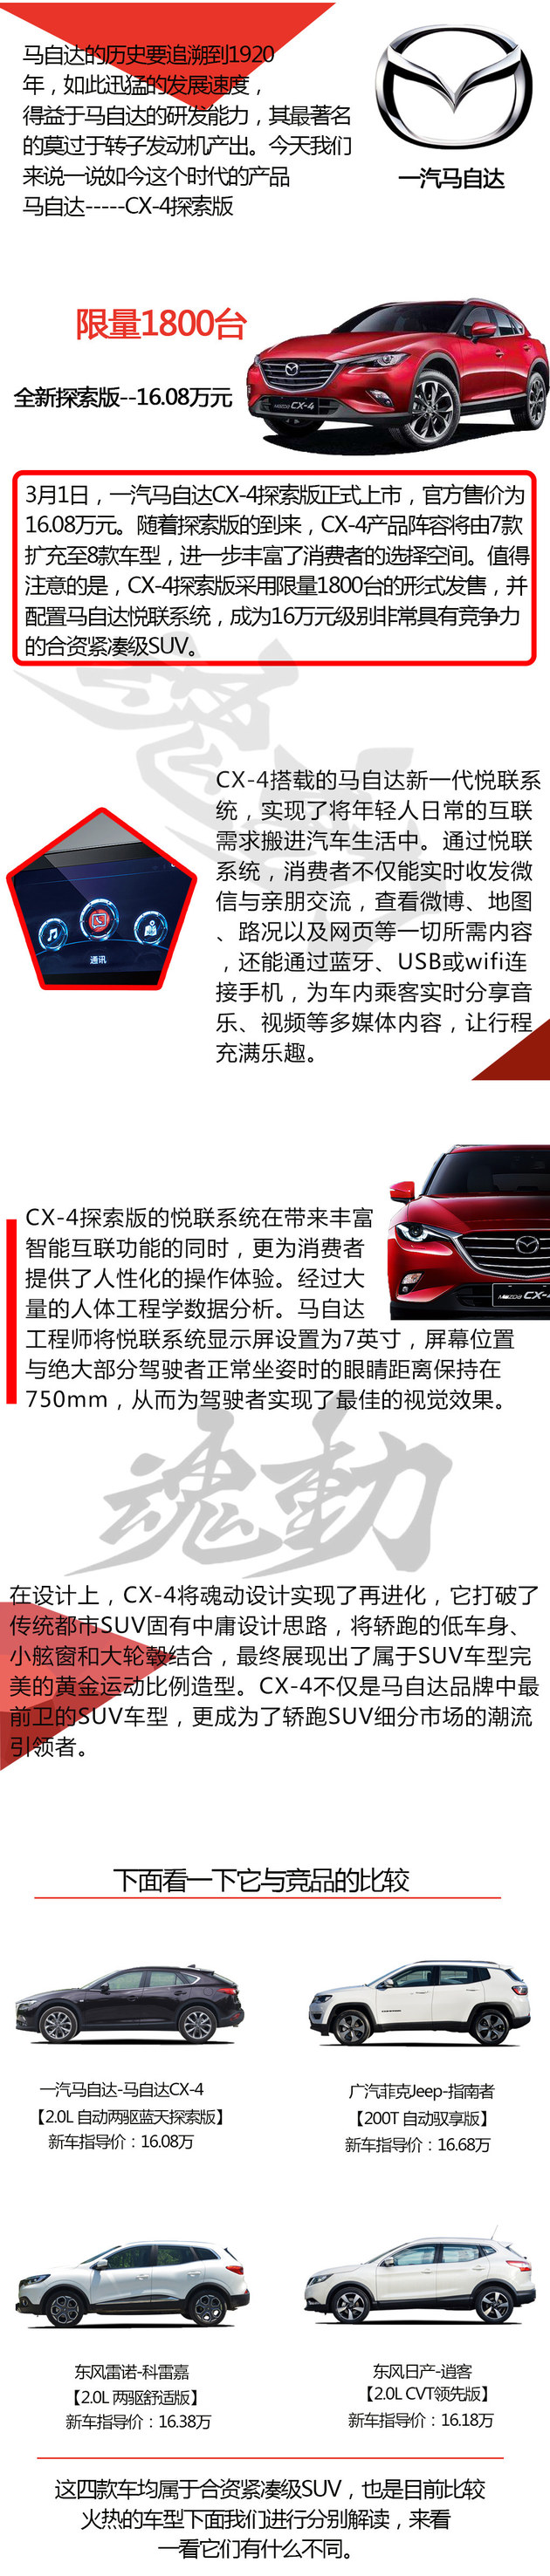 马自达CX-4领衔 四款合资紧凑型SUV推荐